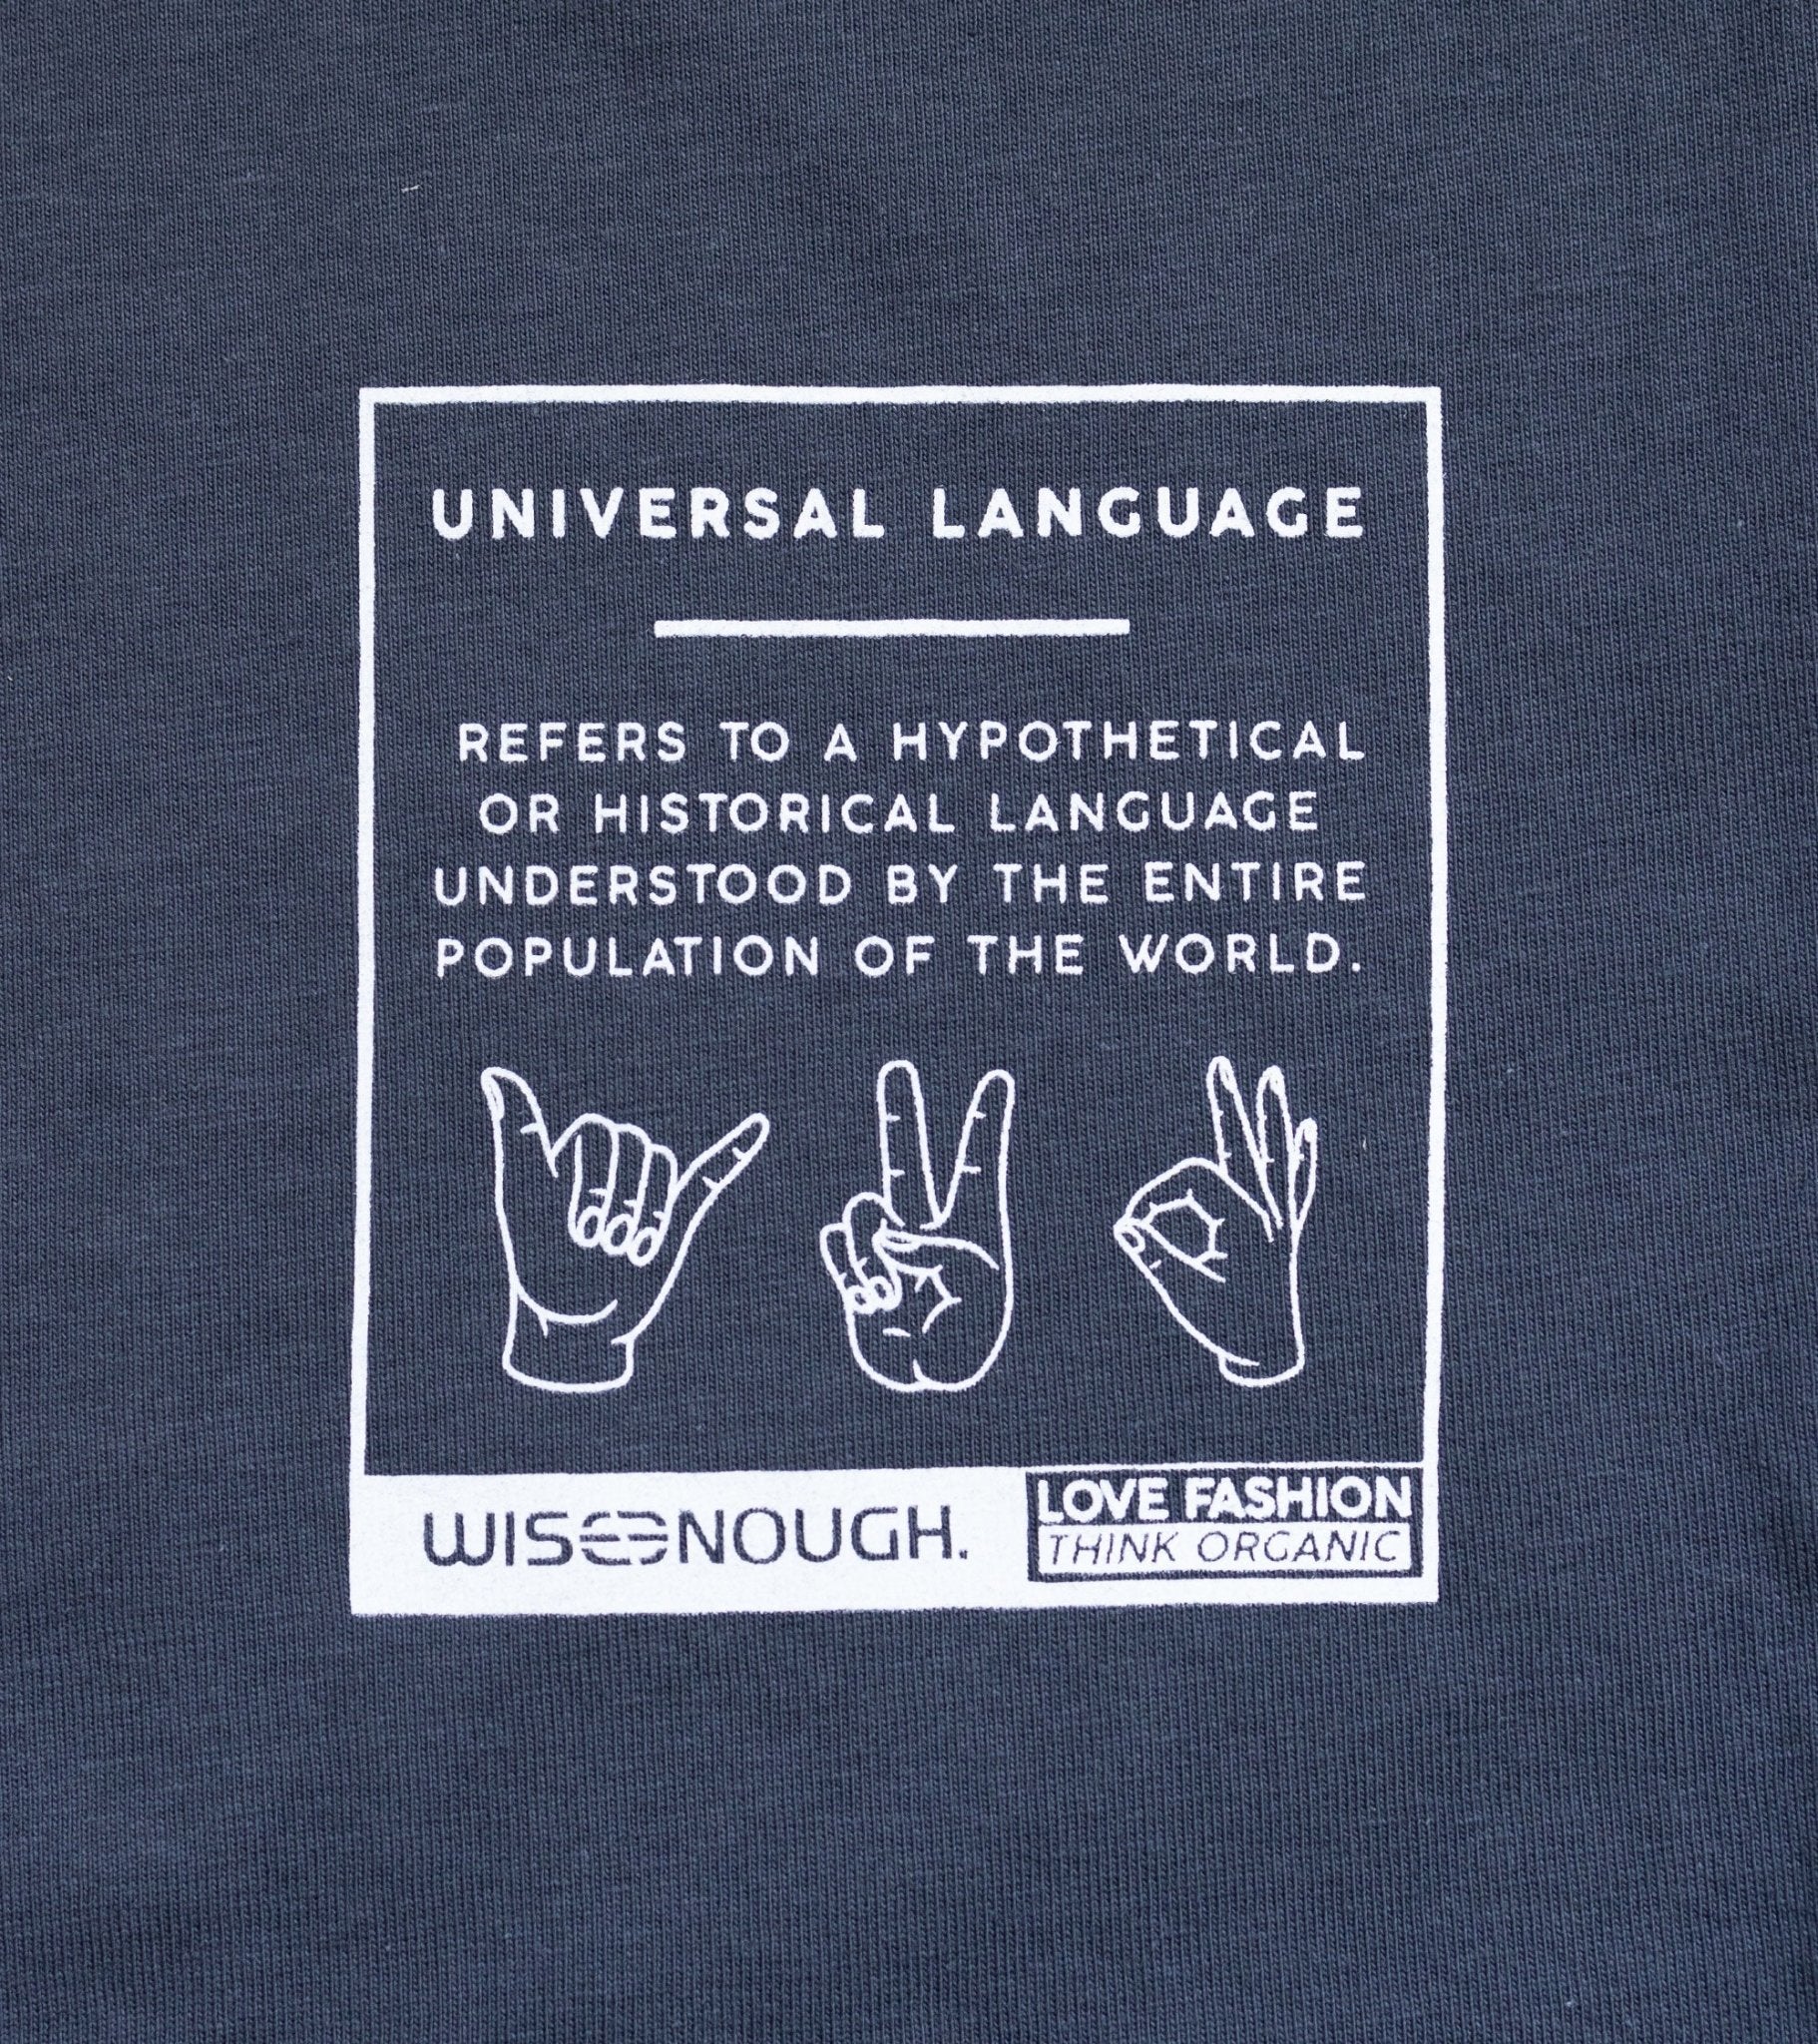 Universal Language Herren Crew Neck T-Shirt - Okay - wise enough